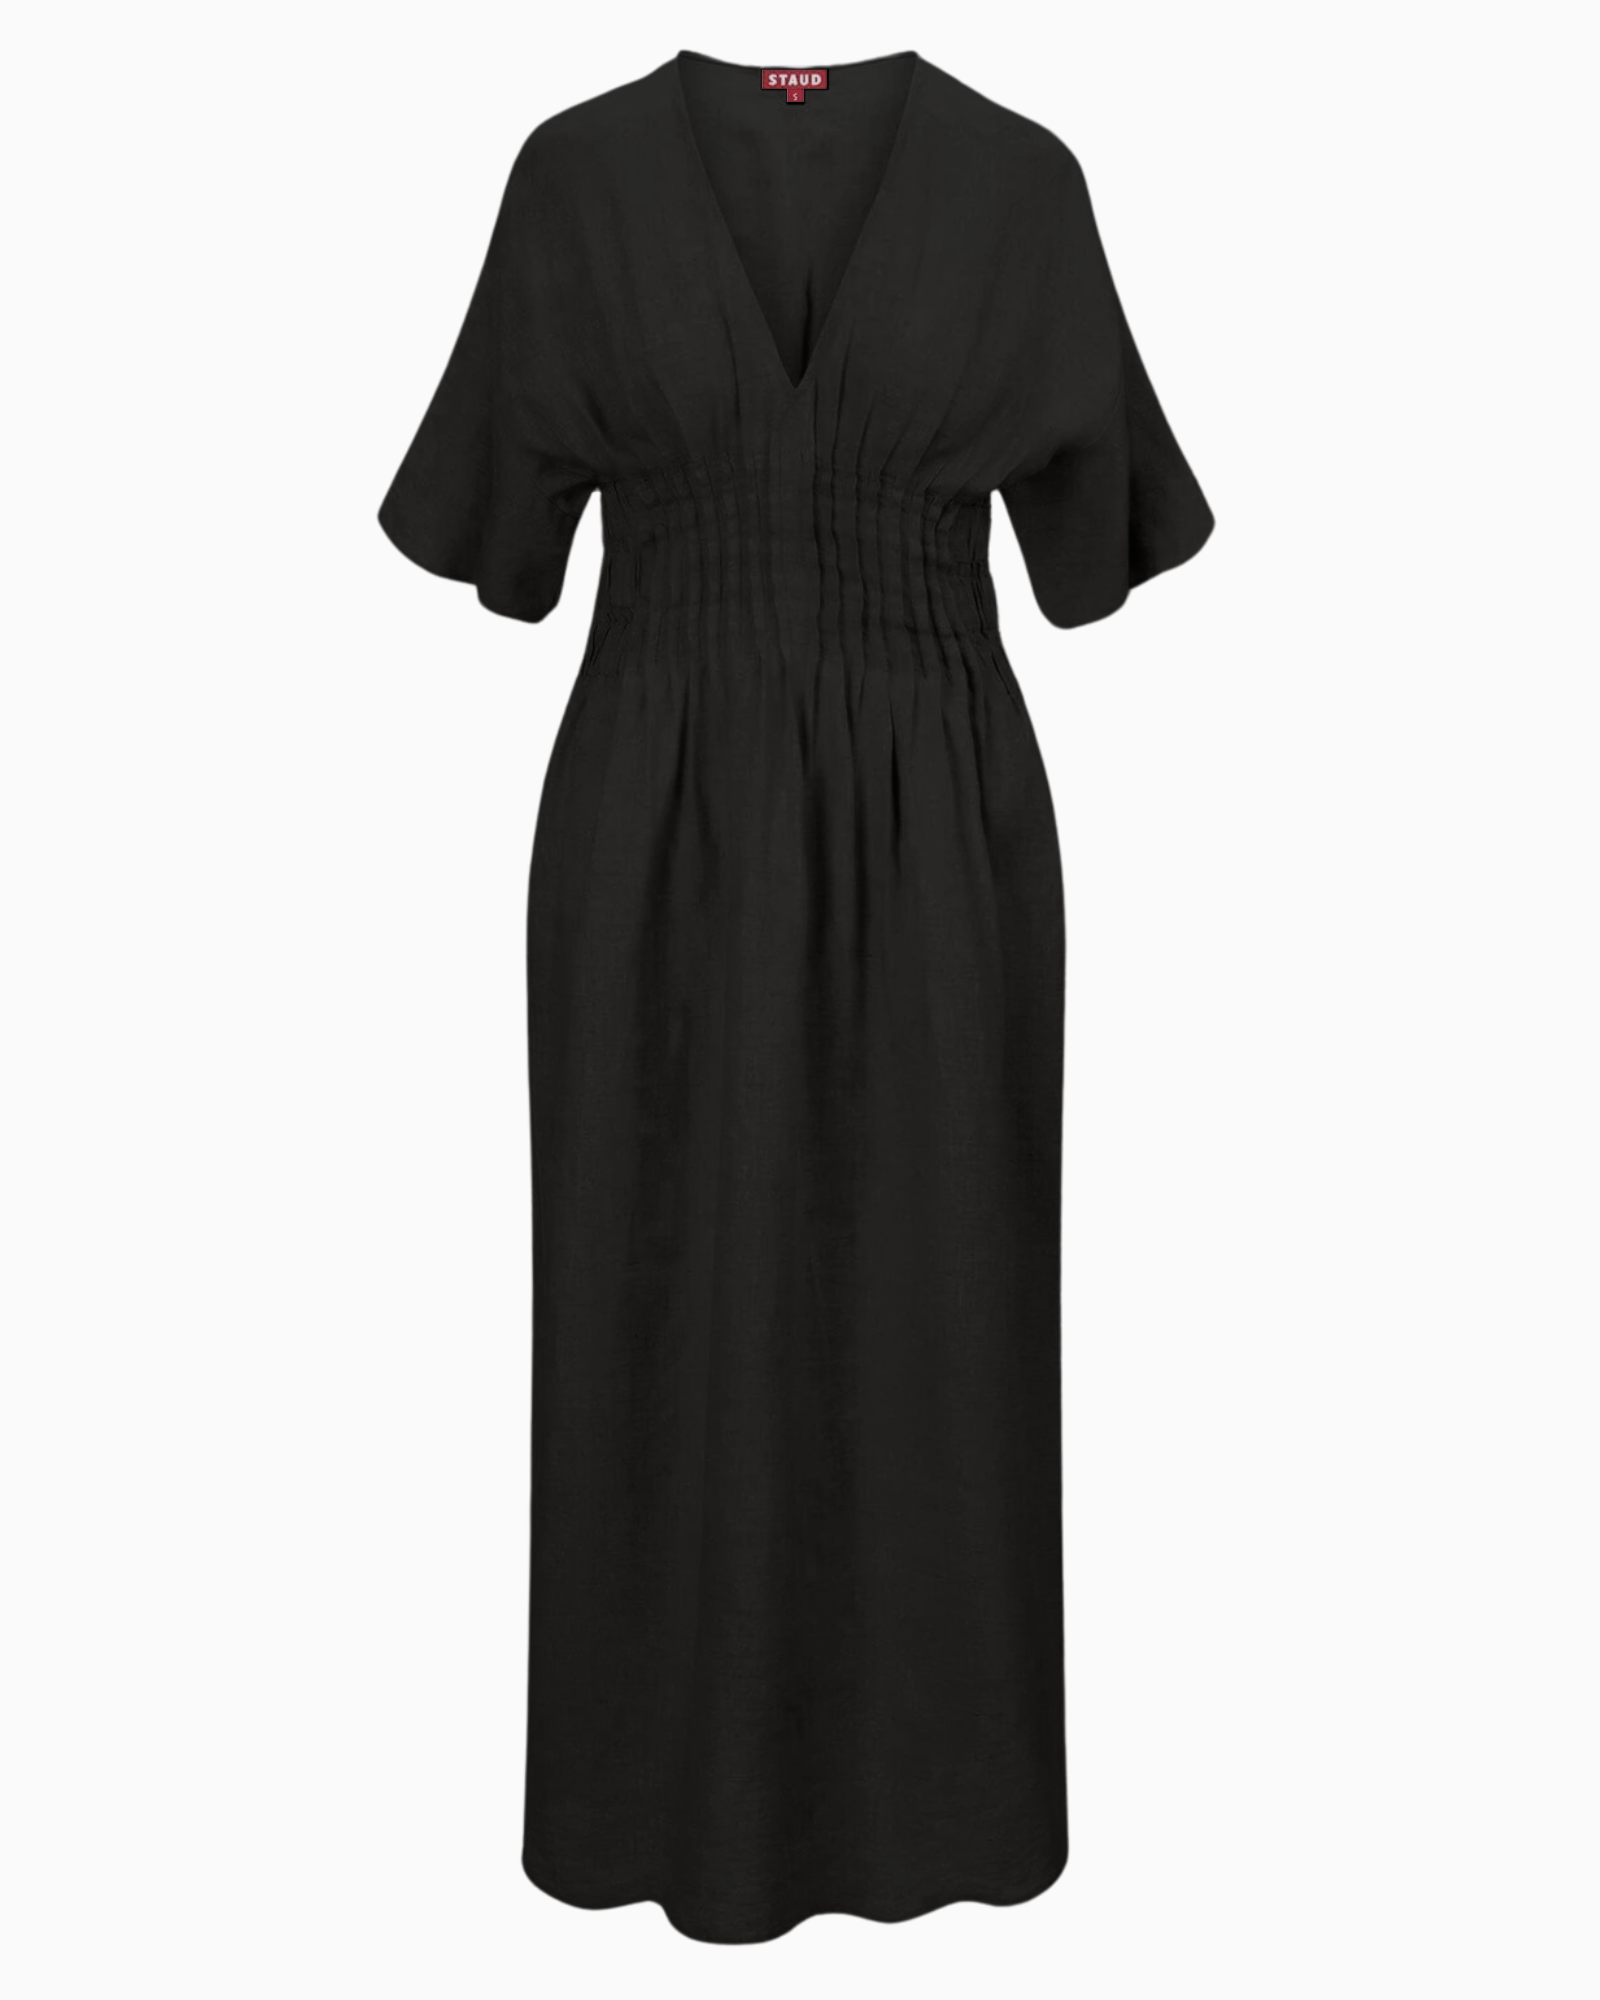 Staud Lauretta Dress in Black